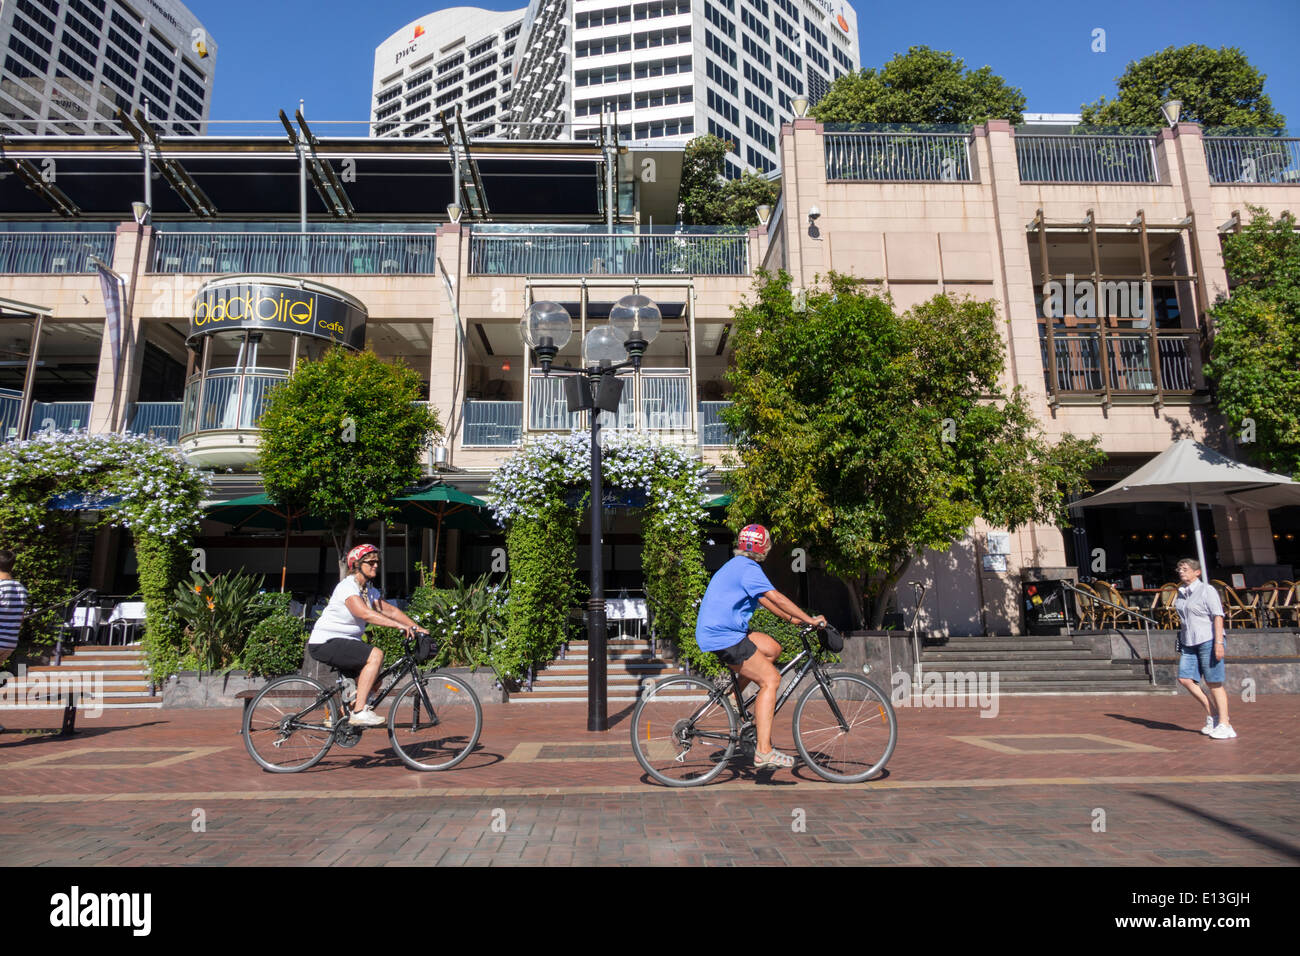 Sydney Australie,Darling Harbour,port,Cockle Bay Promenade,Wharf,femme femme,vélo,vélo,équitation,cyclisme,pilote,vélo,équitation,AU140311091 Banque D'Images